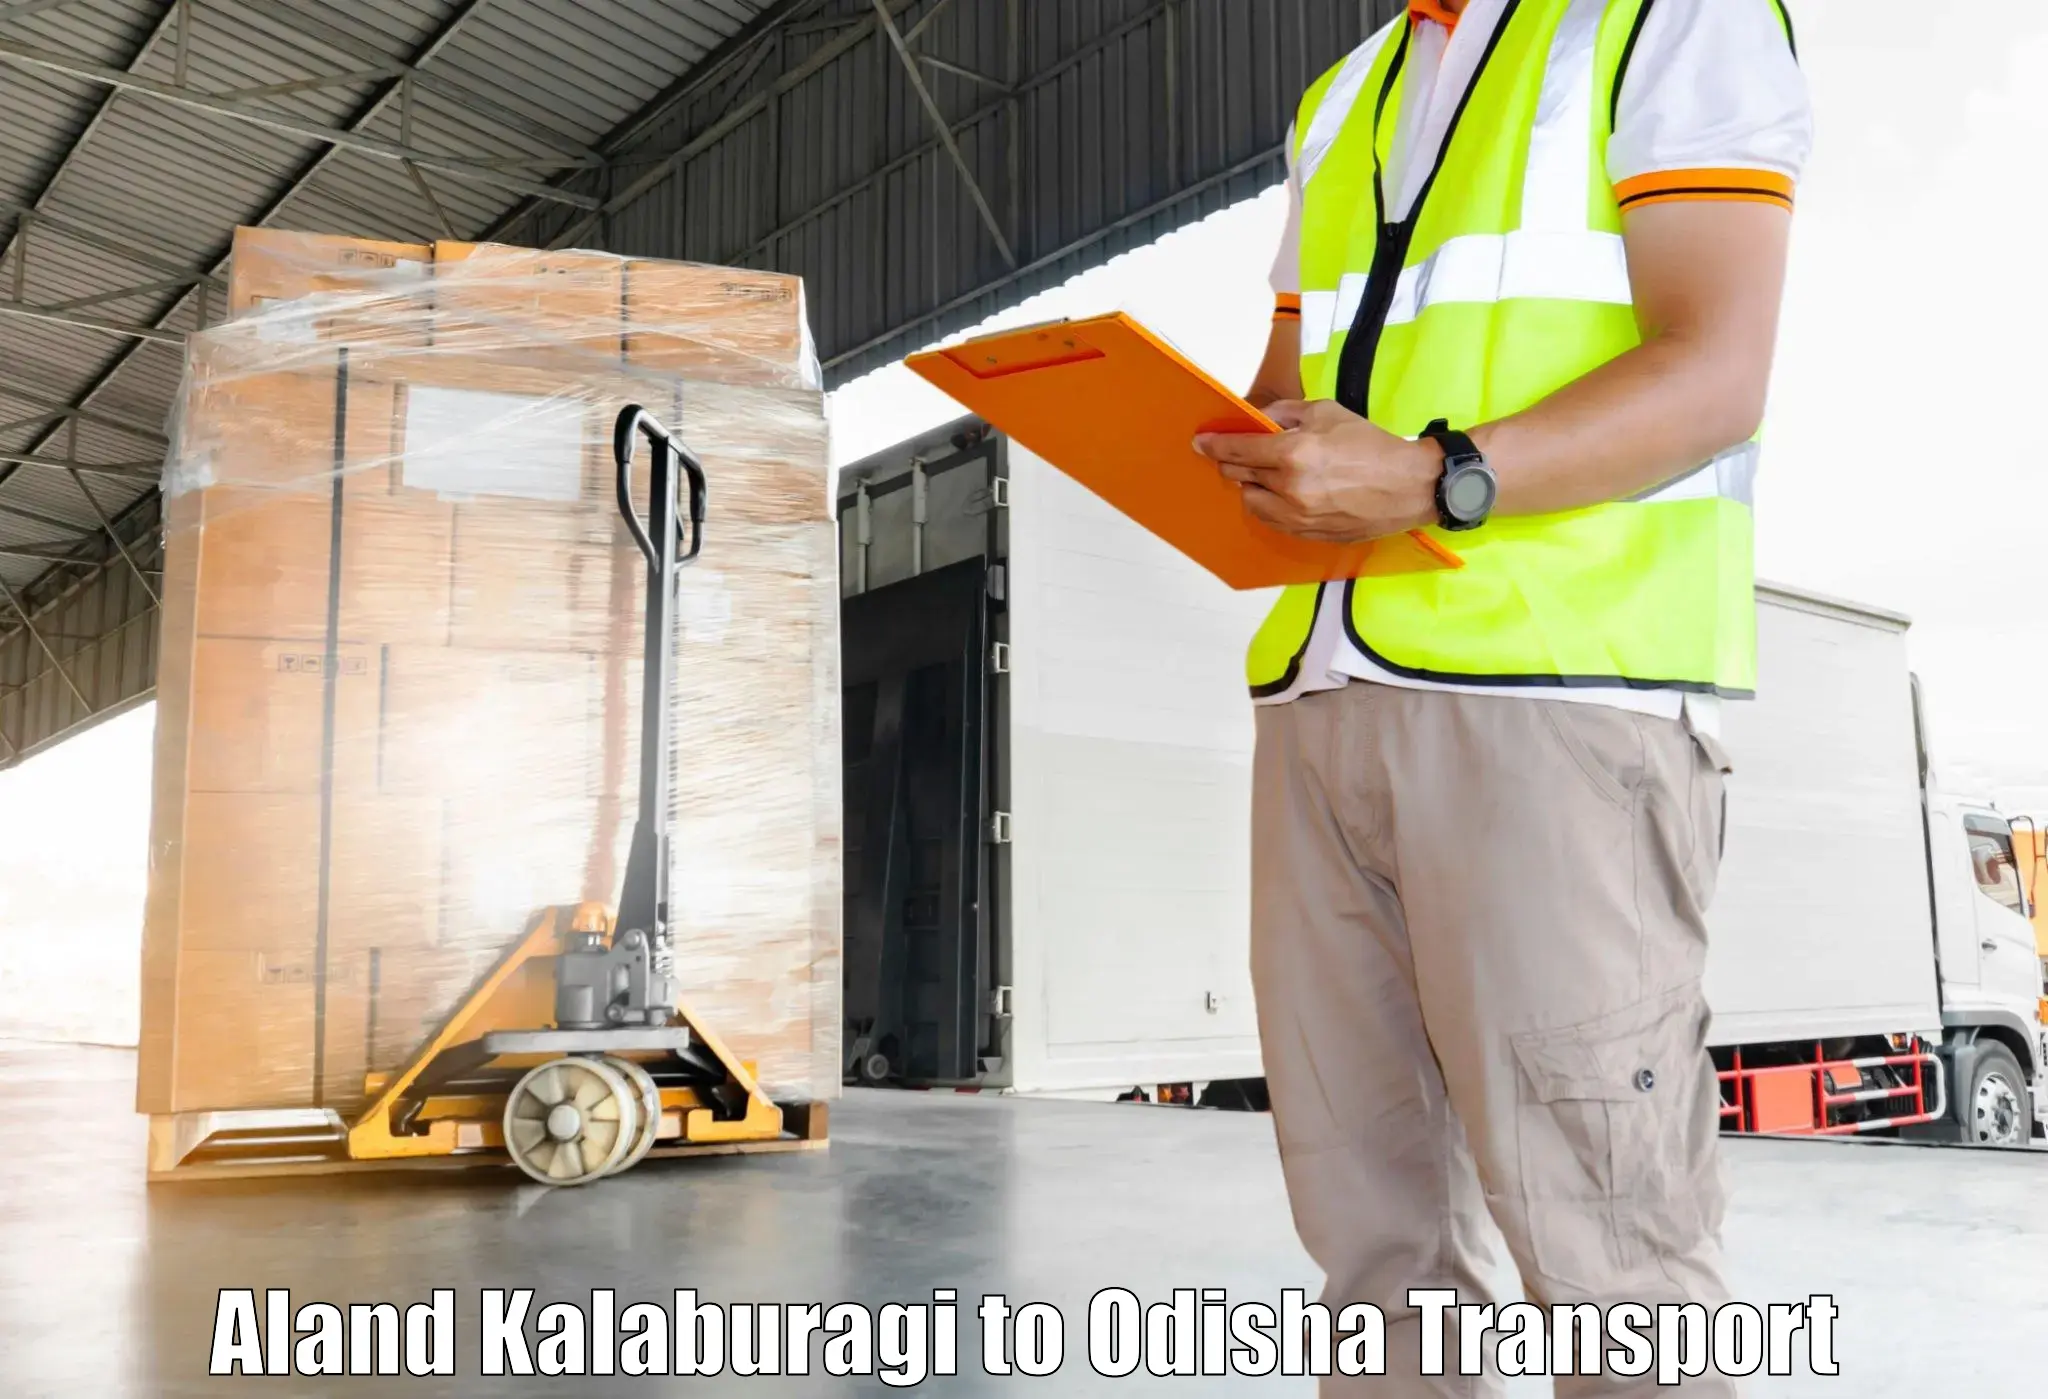 Pick up transport service Aland Kalaburagi to Kamakhyanagar